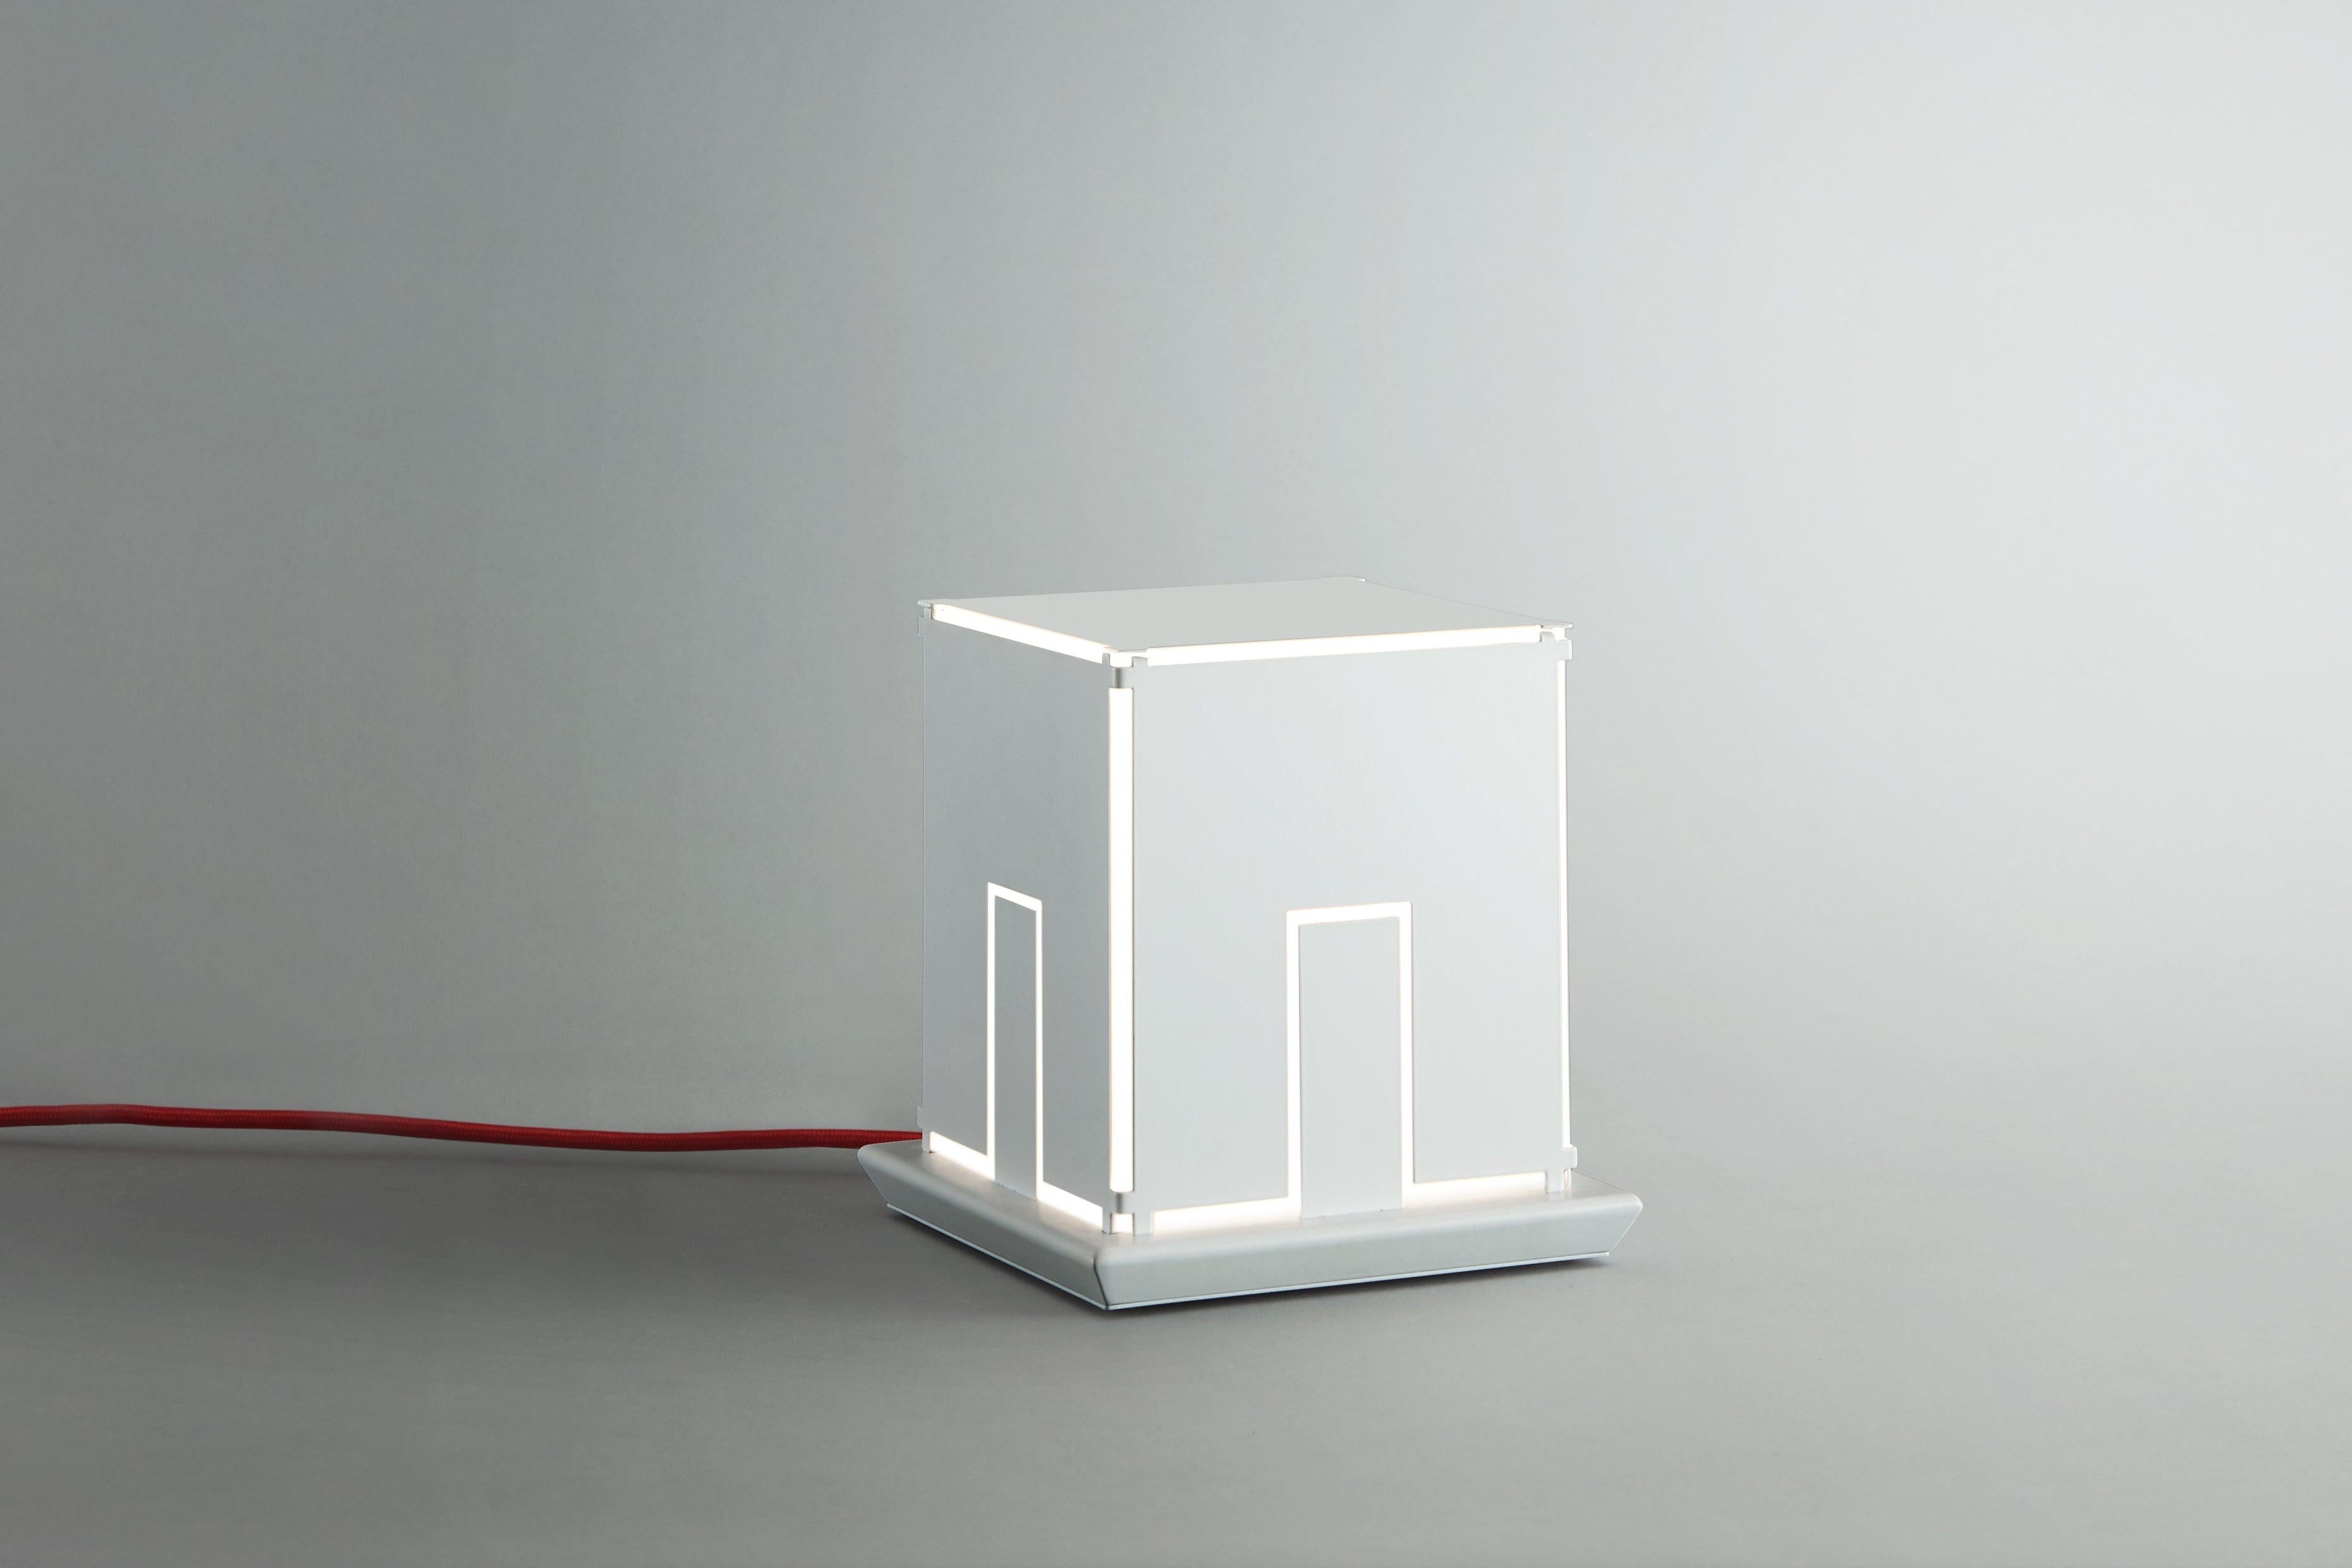 Lampe de table LightHouse œuvre d'art de l'artiste Massimo Uberti édition limitée métal verni blanc La nouvelle œuvre d'art de la lumière de l'artiste Massimo Uberti à Pollice Light Gallery LightHouse est un produit artisanal, réalisé avec soin par